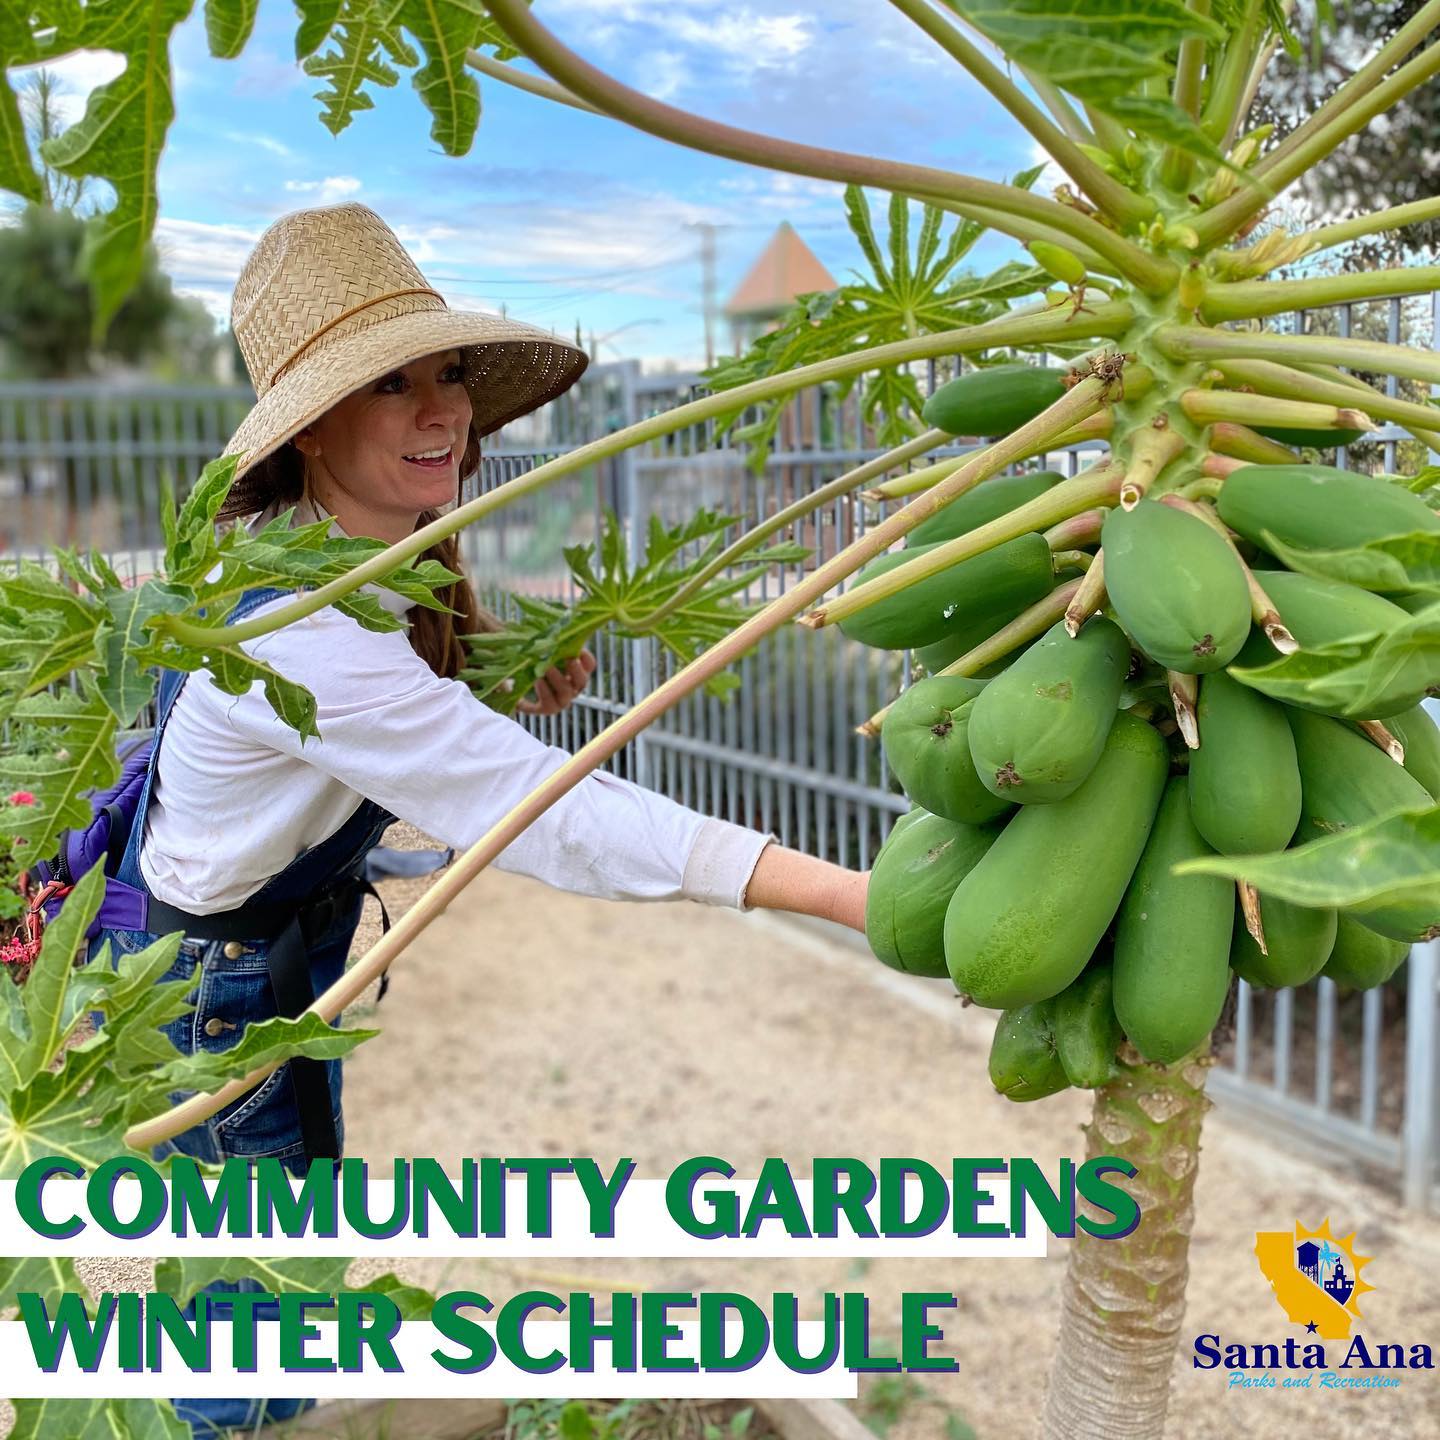 Community Gardens Winter Schedule